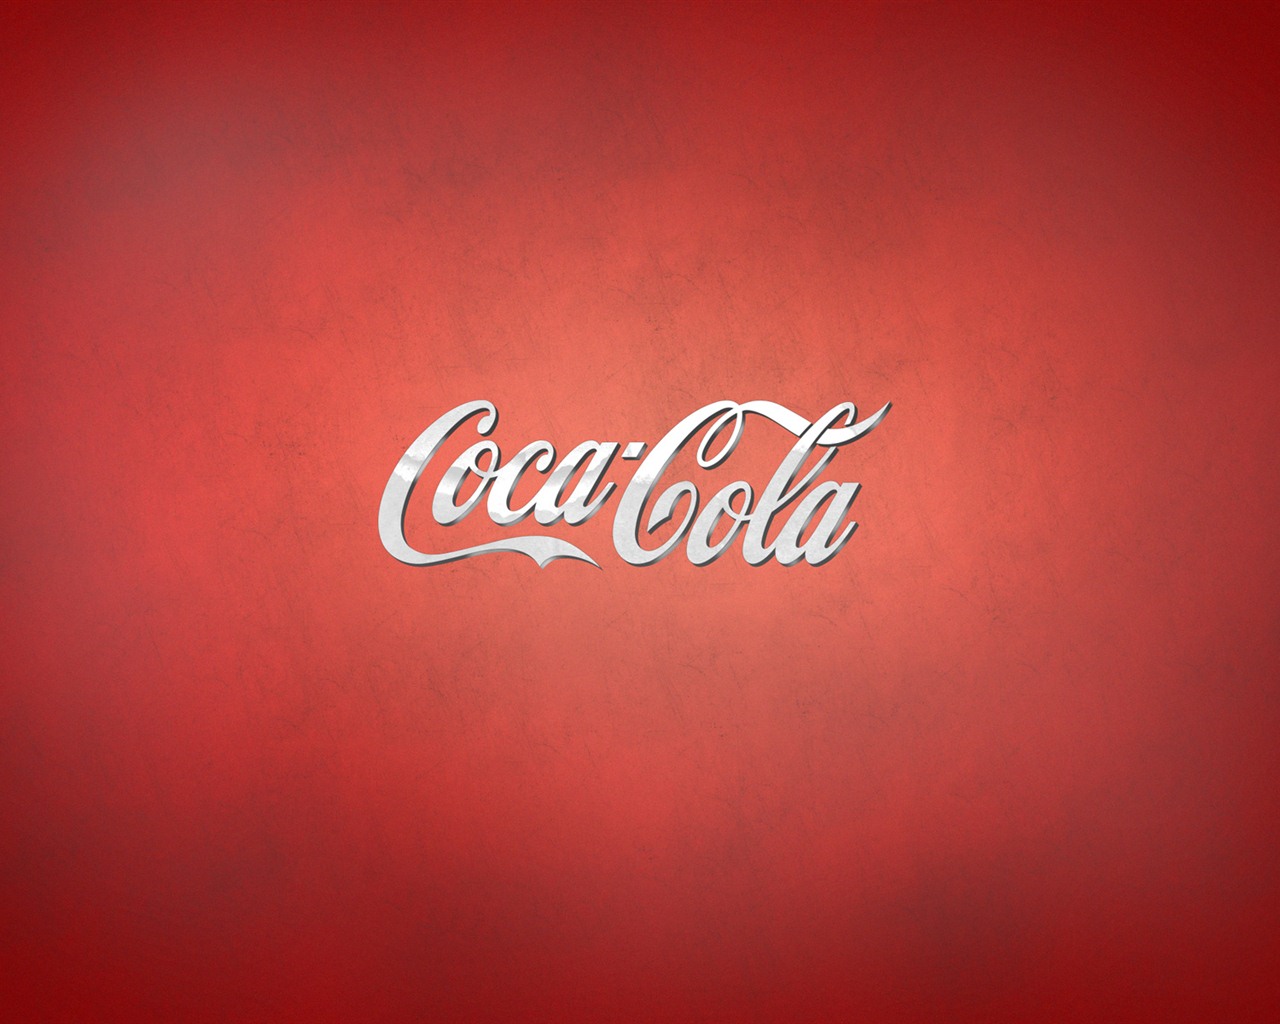 Coca-Cola beautiful ad wallpaper #16 - 1280x1024